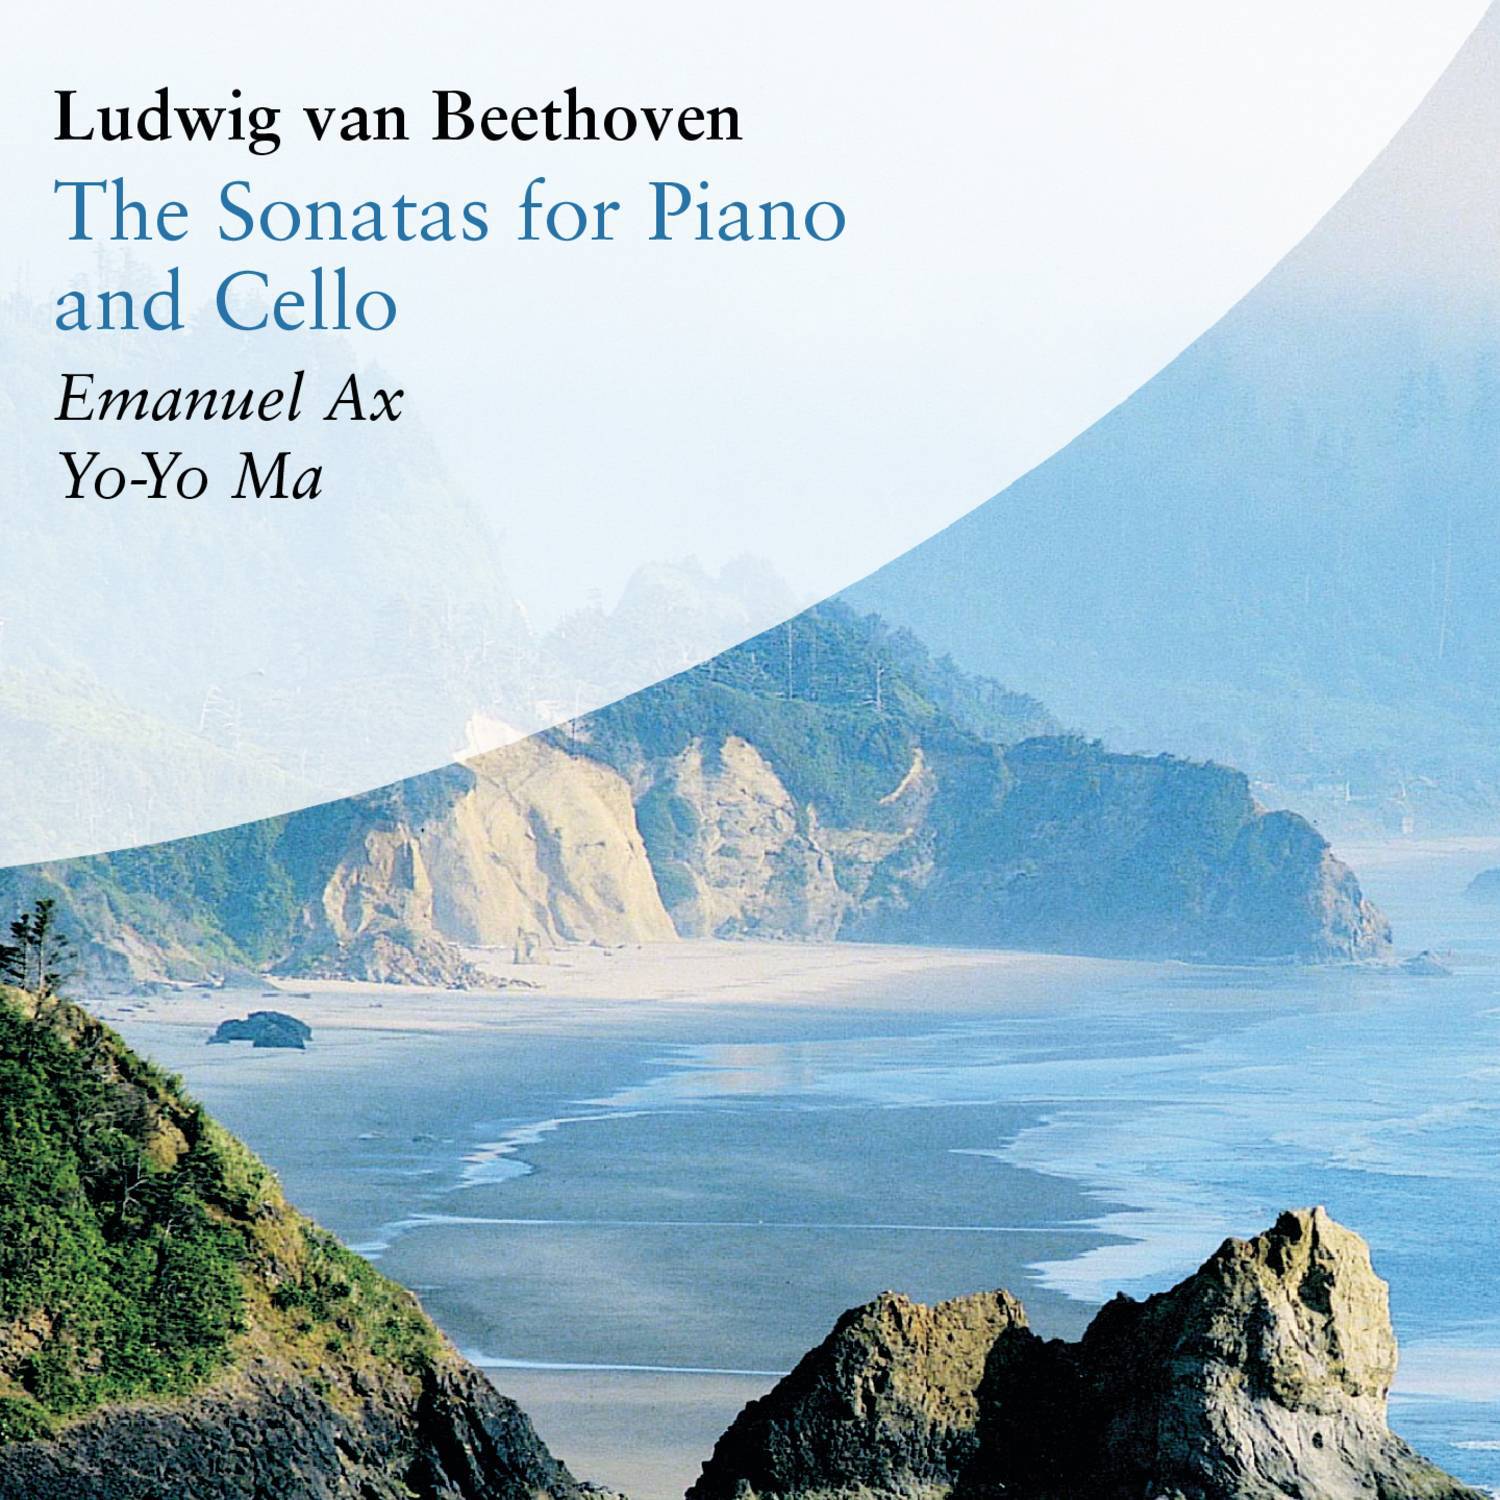 Cello Sonata No. 4 in C Major, Op. 102 No. 1:I. Andante - Allegro vivace